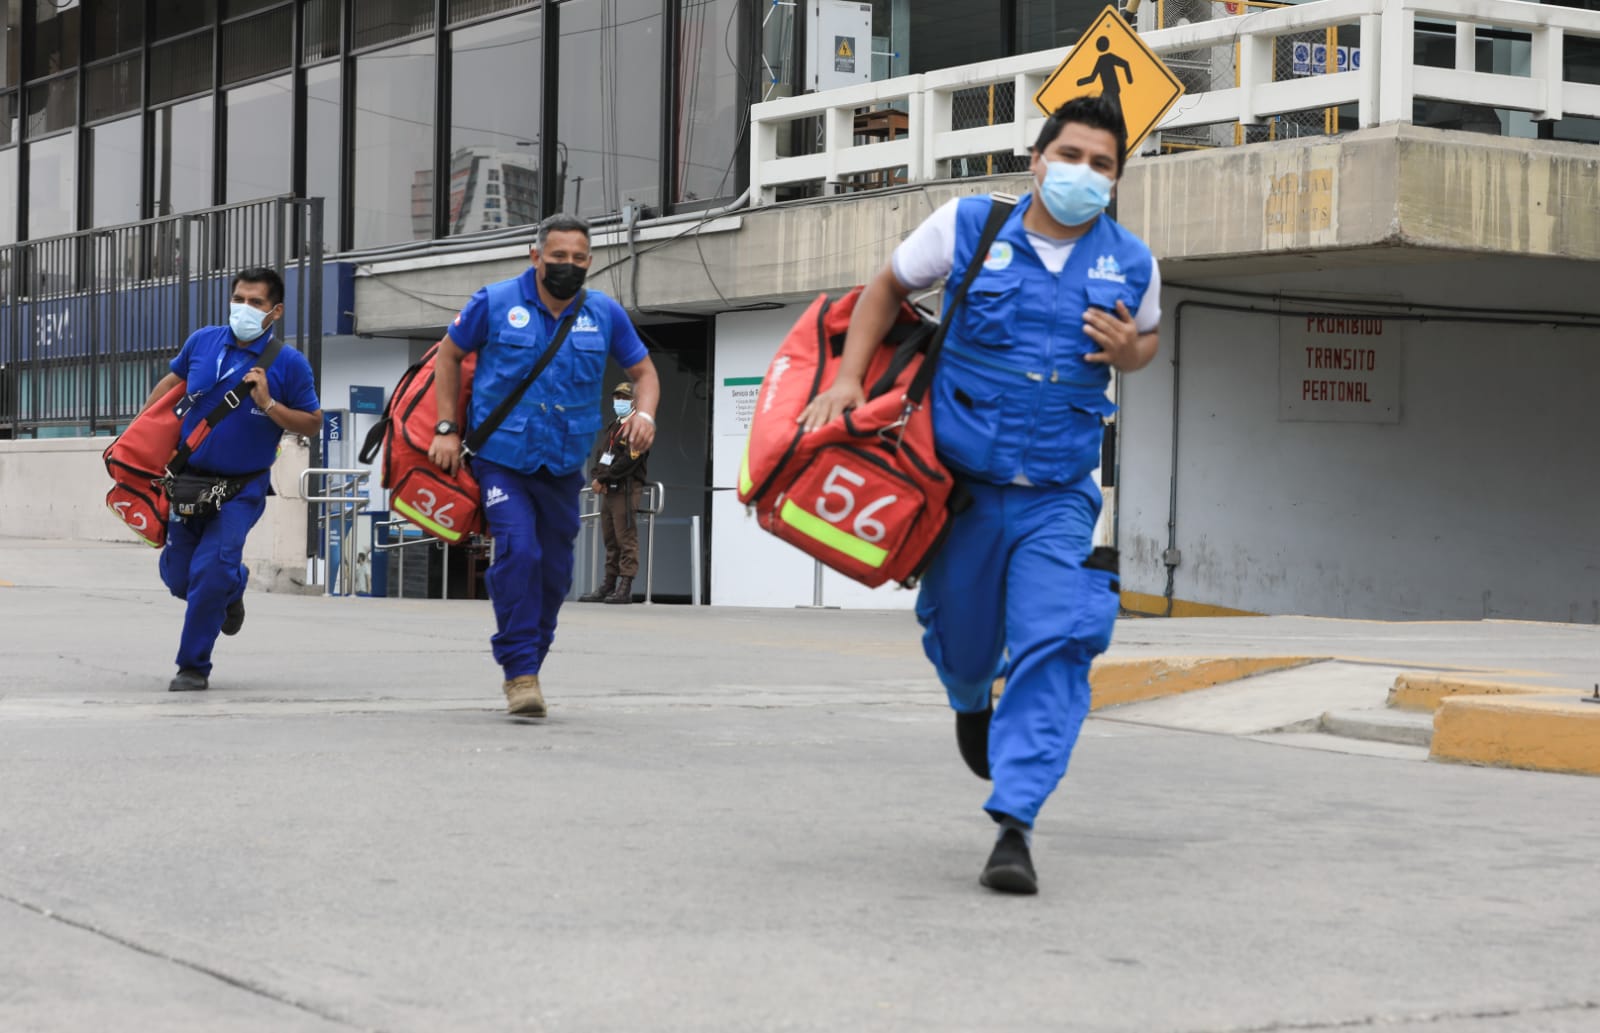 Essalud - Hospital Perú viajará a zonas afectadas por el sismo para atender a damnificados